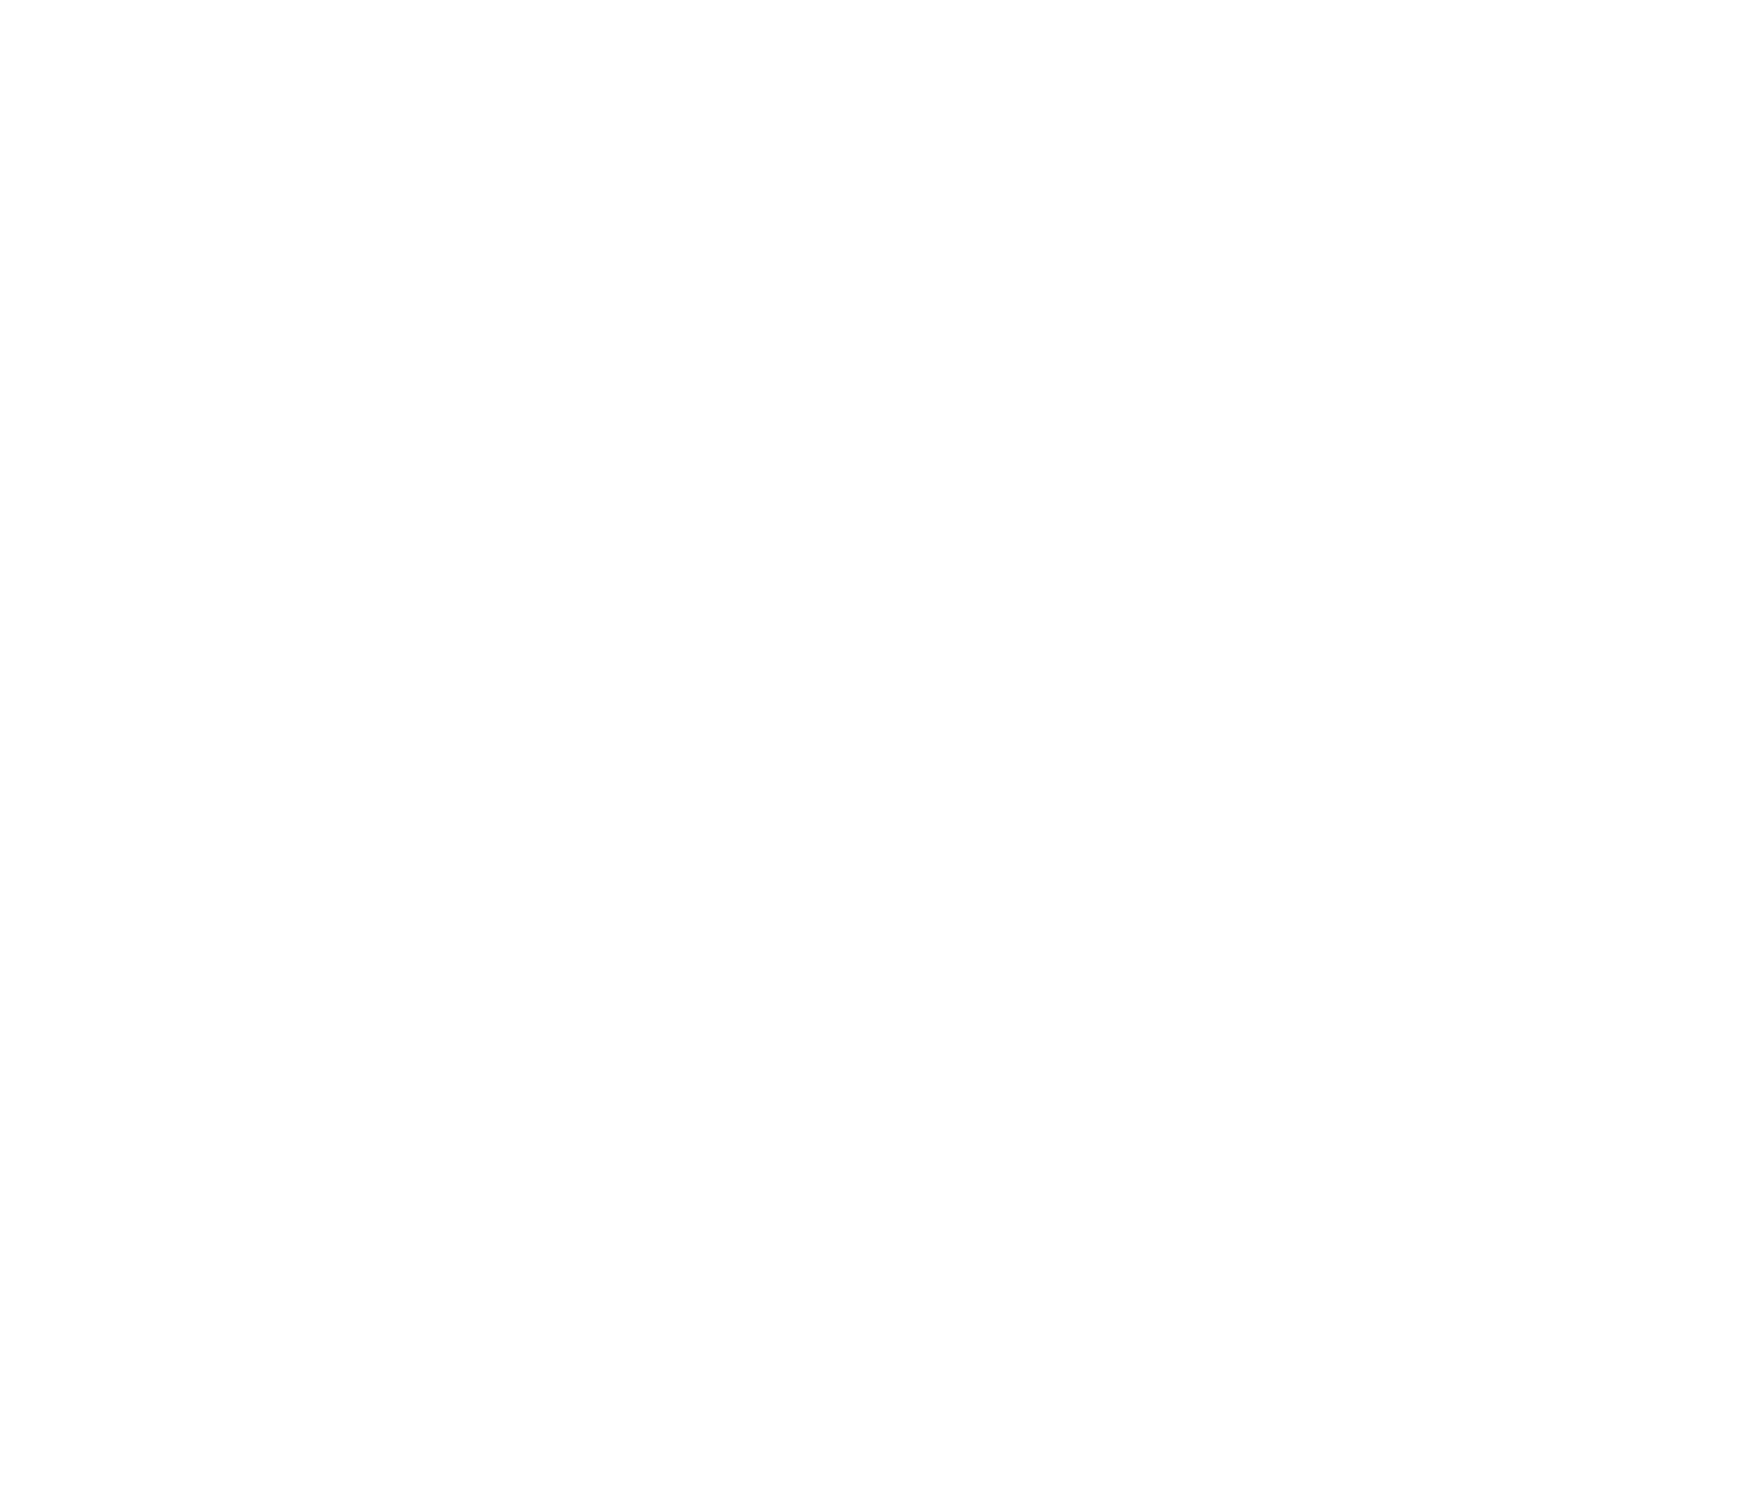 Cedar Falls Community Theatre